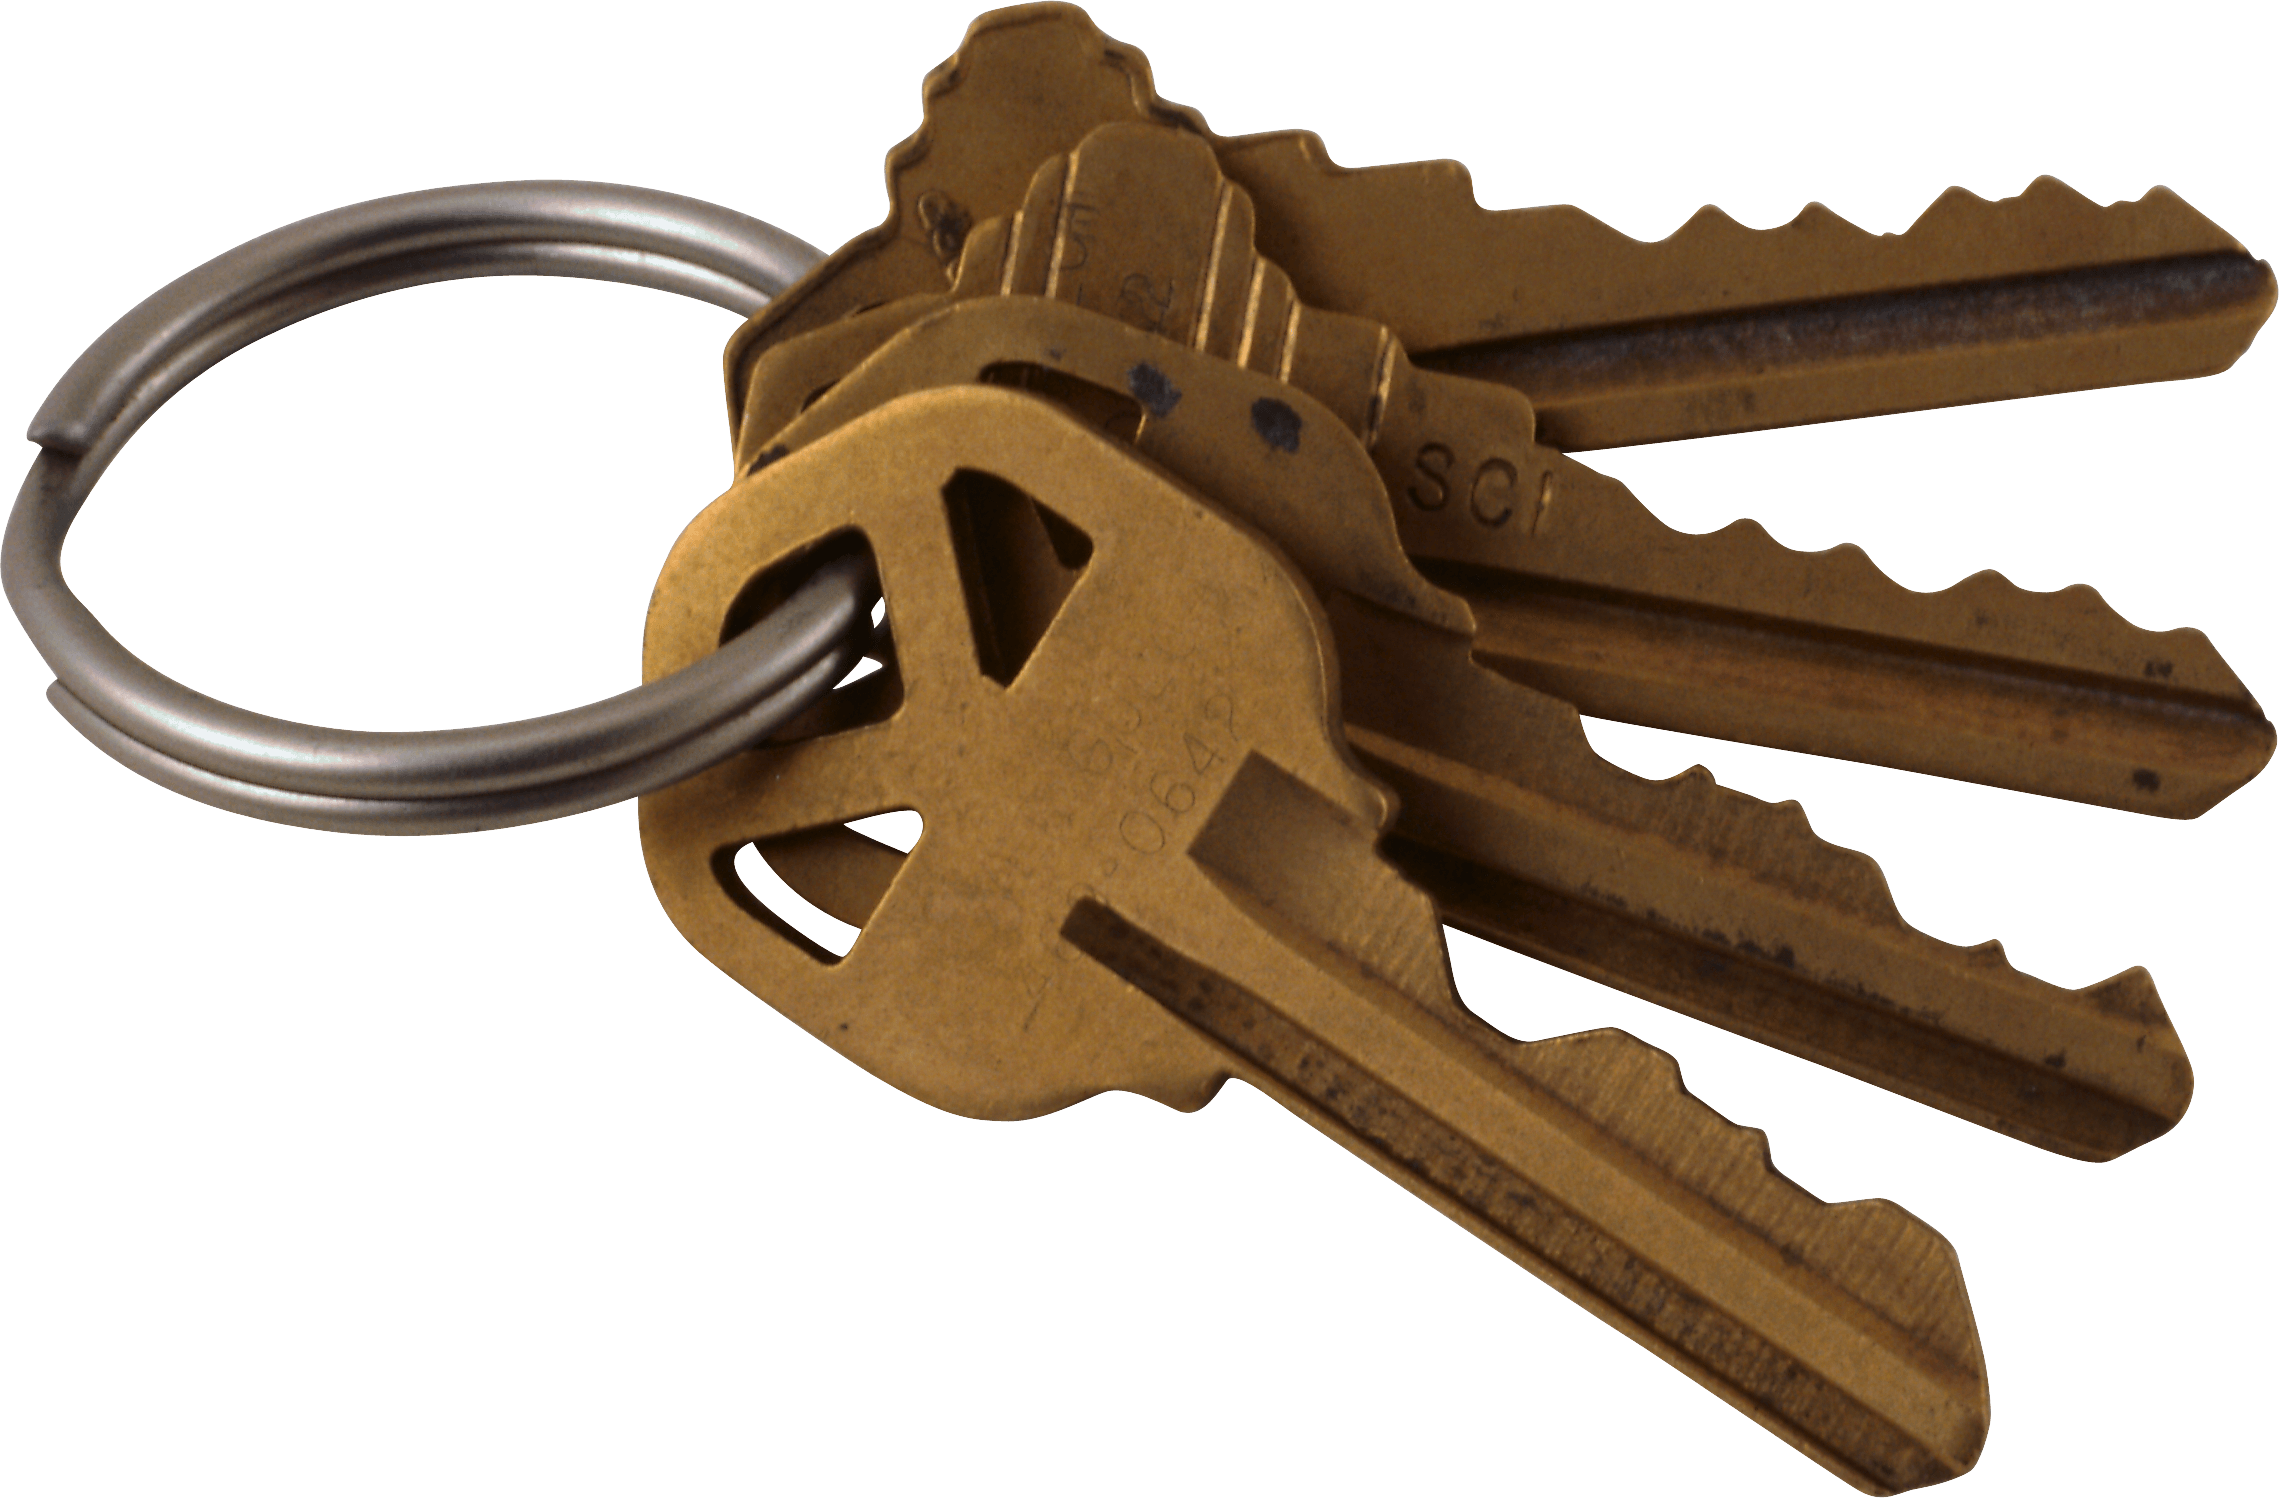 keys clipart metal object